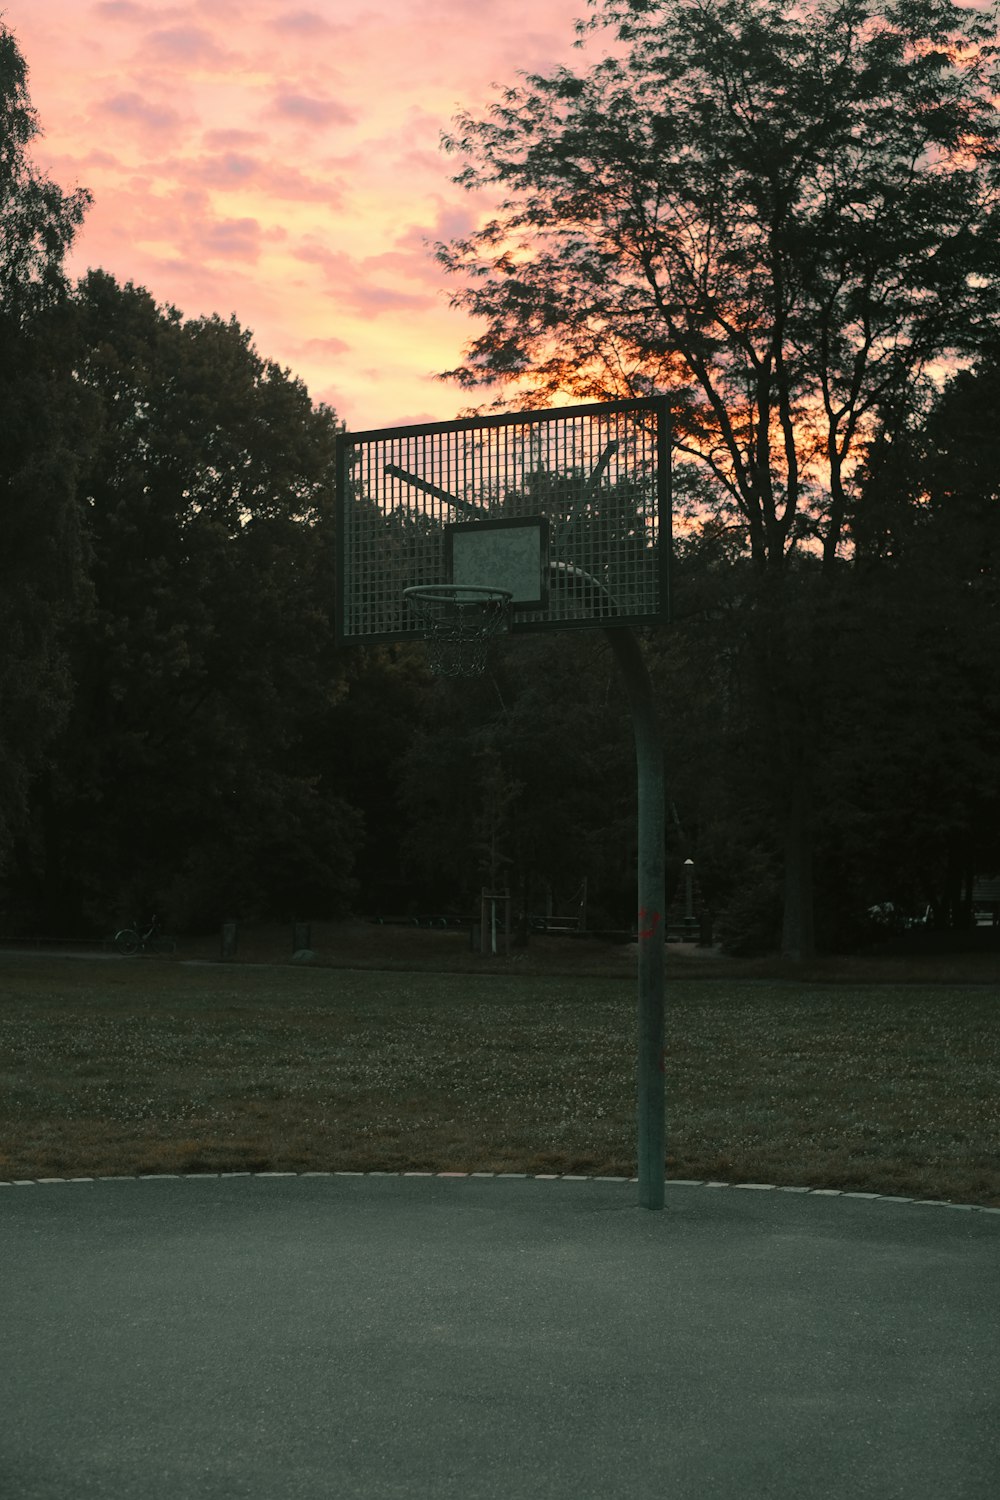 black metal basketball hoop on green grass field during sunset